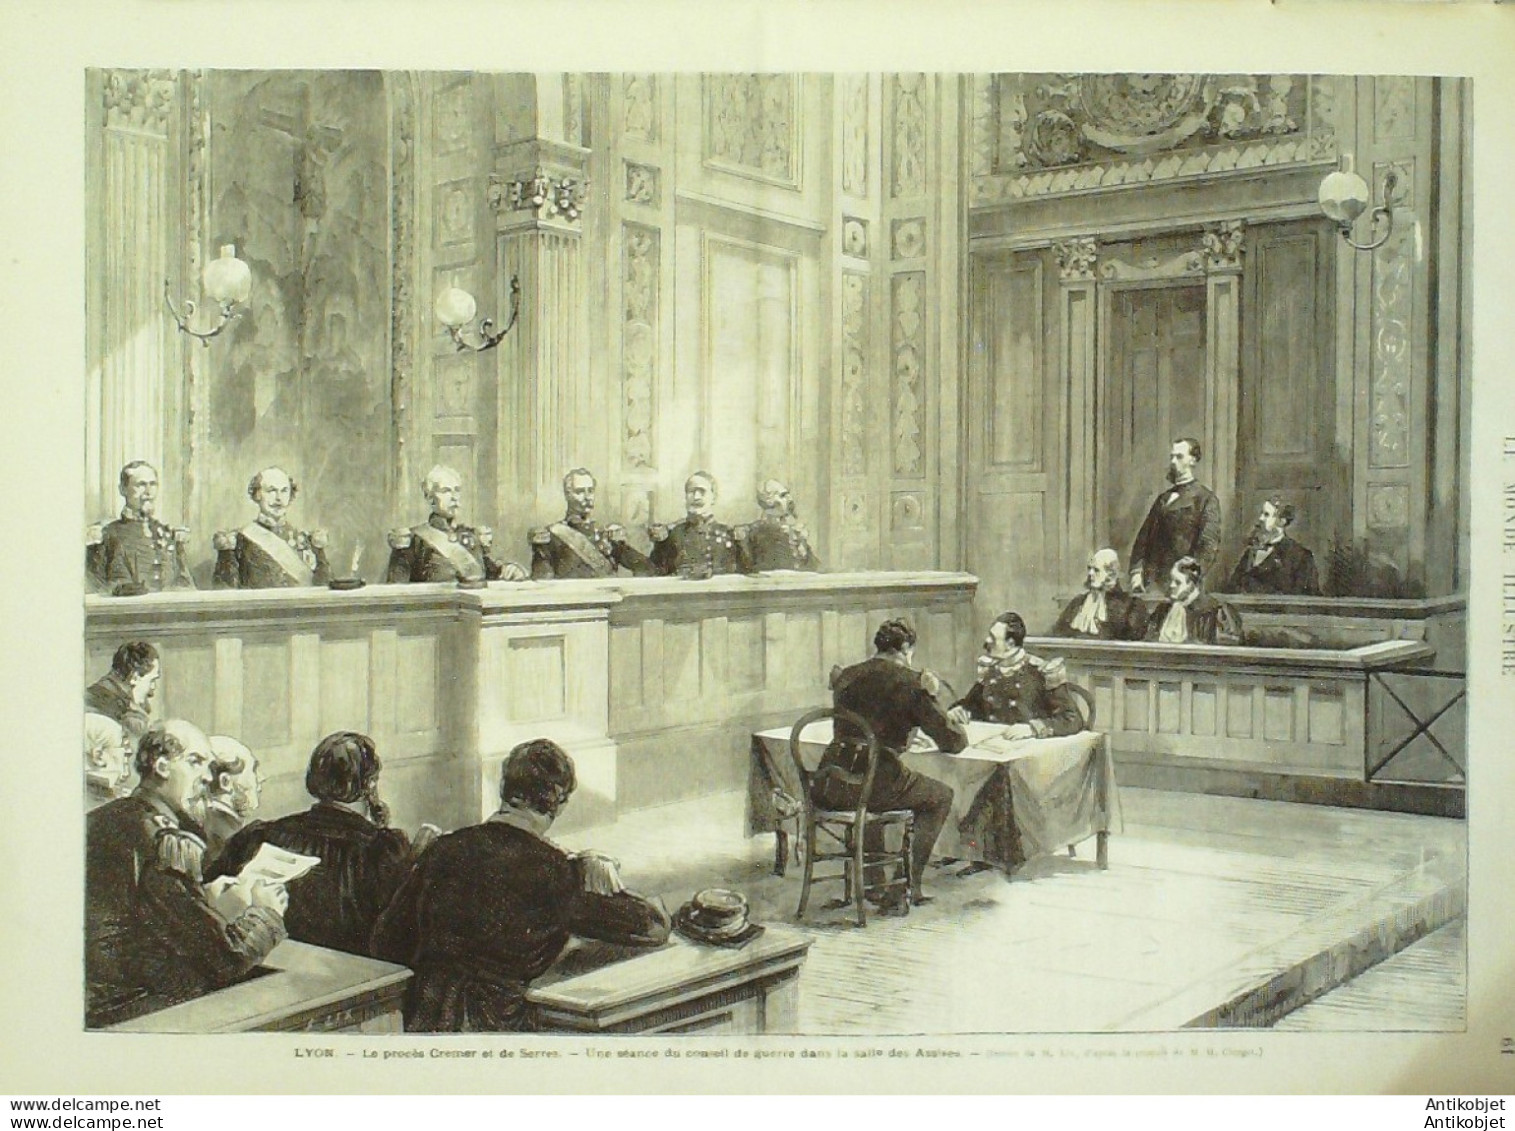 Le Monde illustré 1872 n°798 Lyon (69) Procès Cremeret de Serres Espagne Madrid attentat au Roi Tolède 